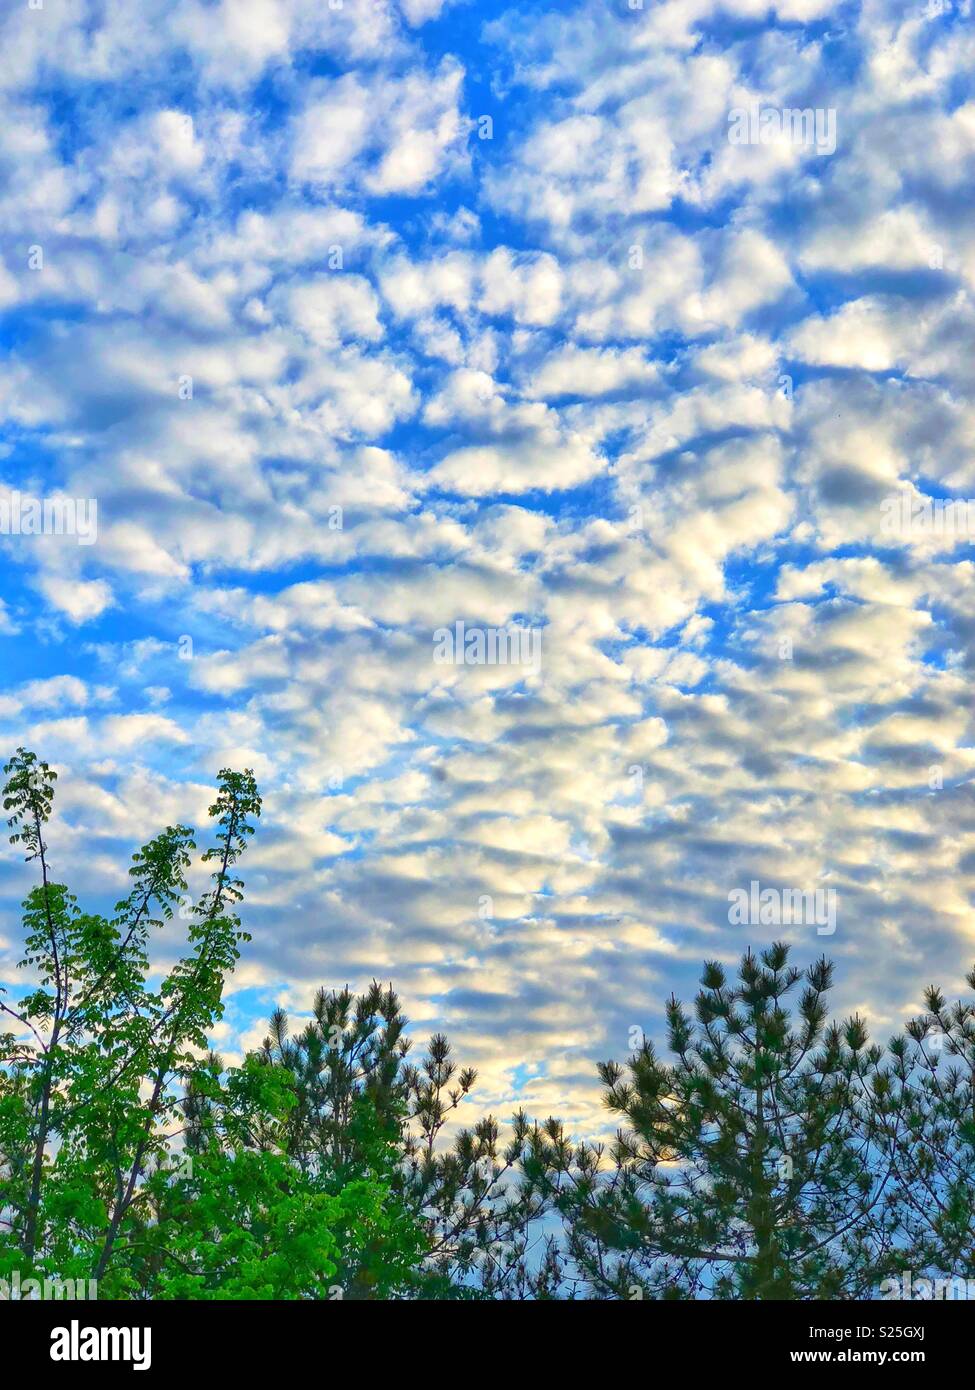 Altocúmulos nubes en un tímido azul brillante con árboles verdes debajo Foto de stock